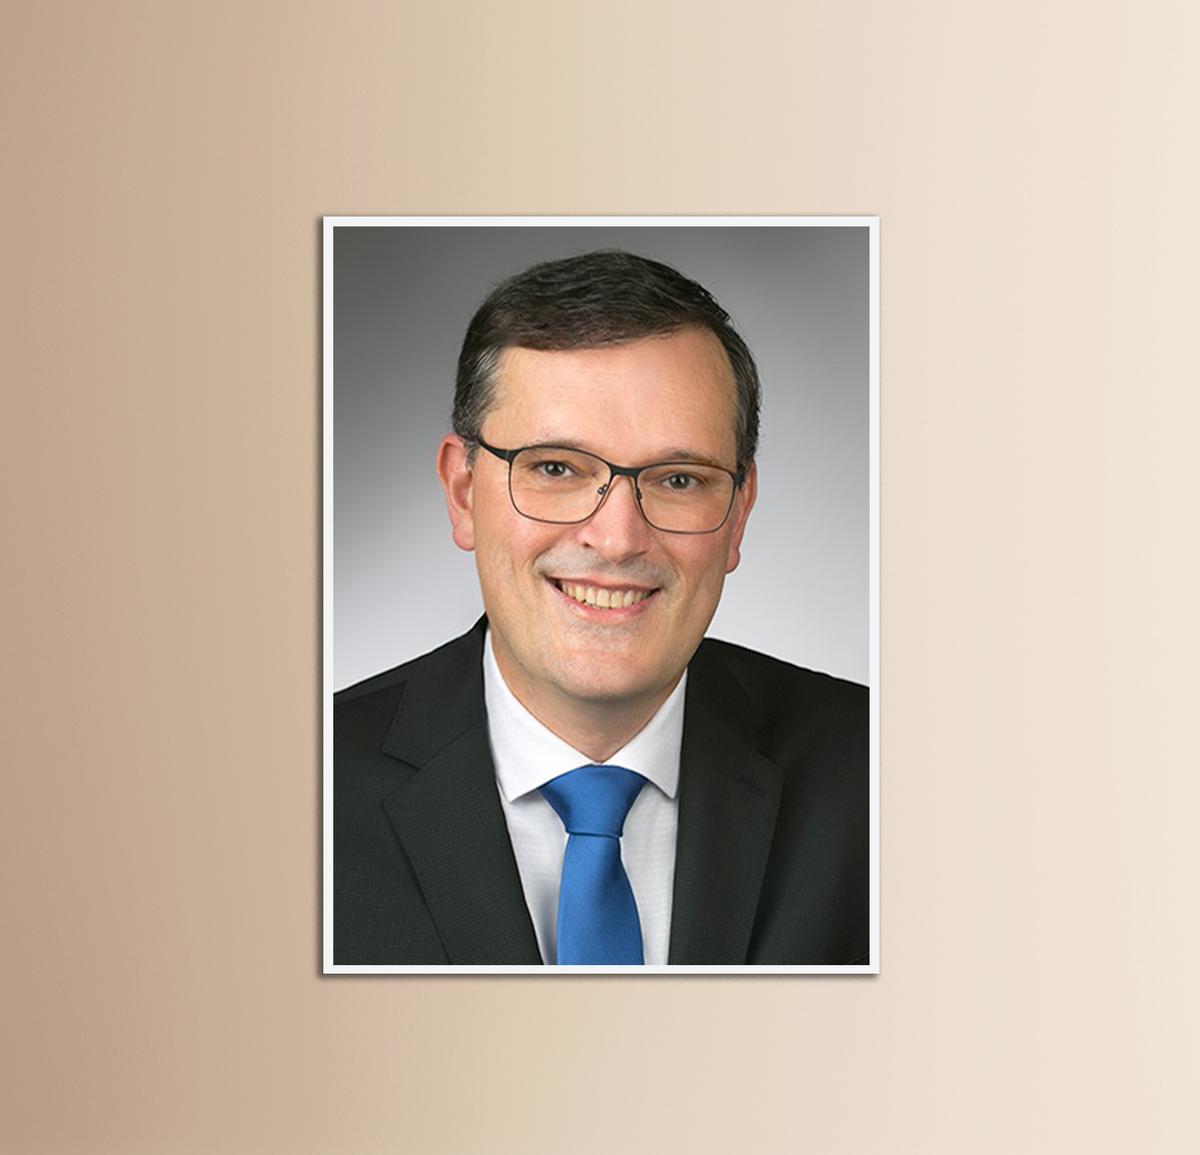 Jürgen Kiesel is the new CEO of Amann Girrbach